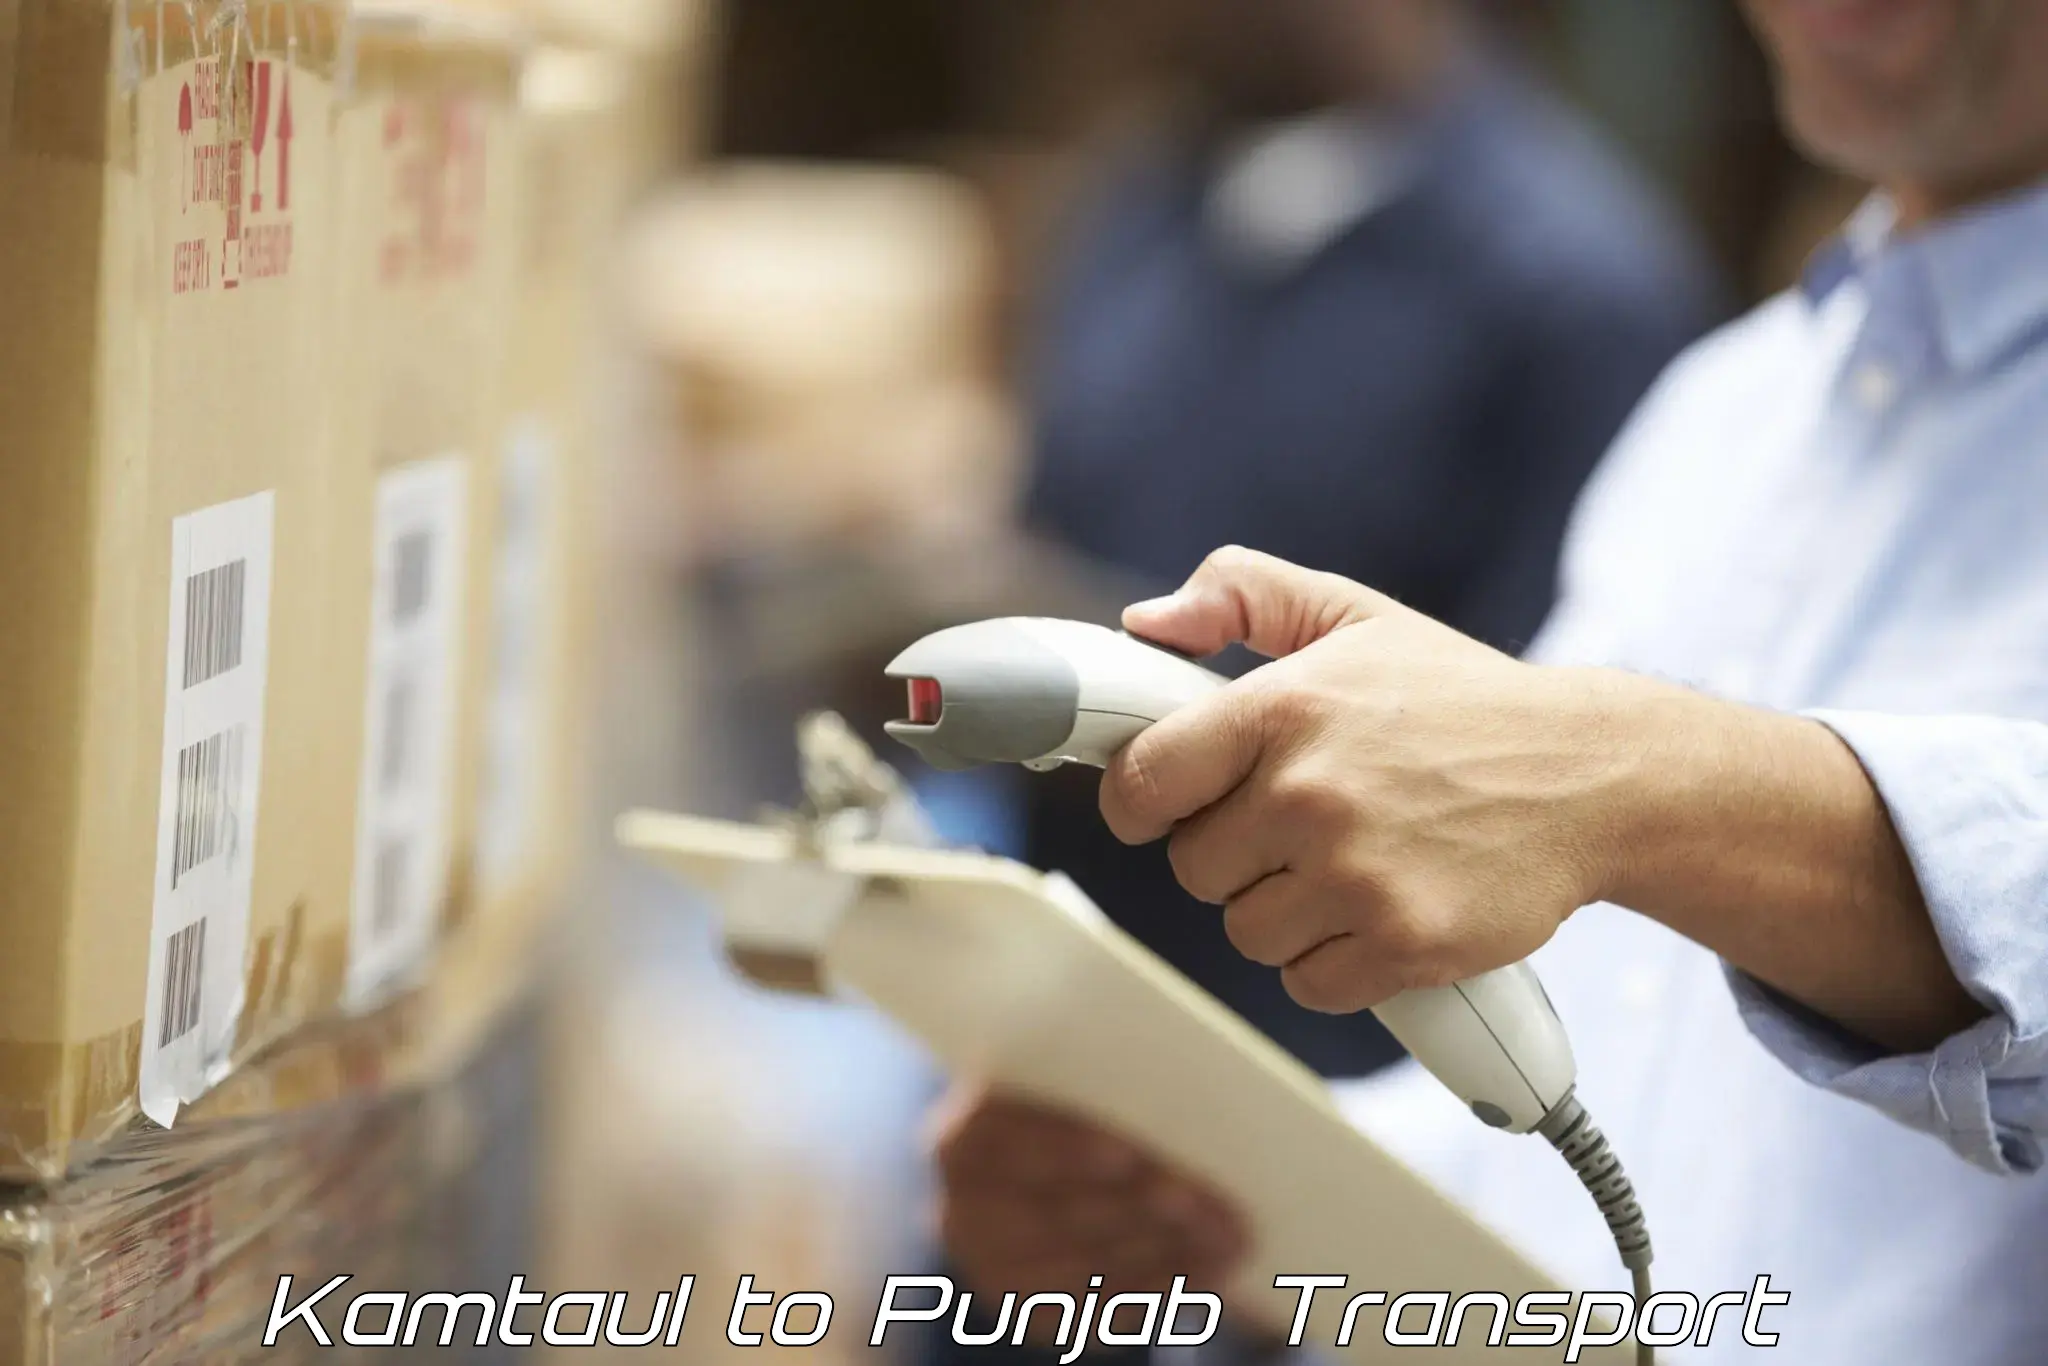 Road transport online services Kamtaul to Ropar